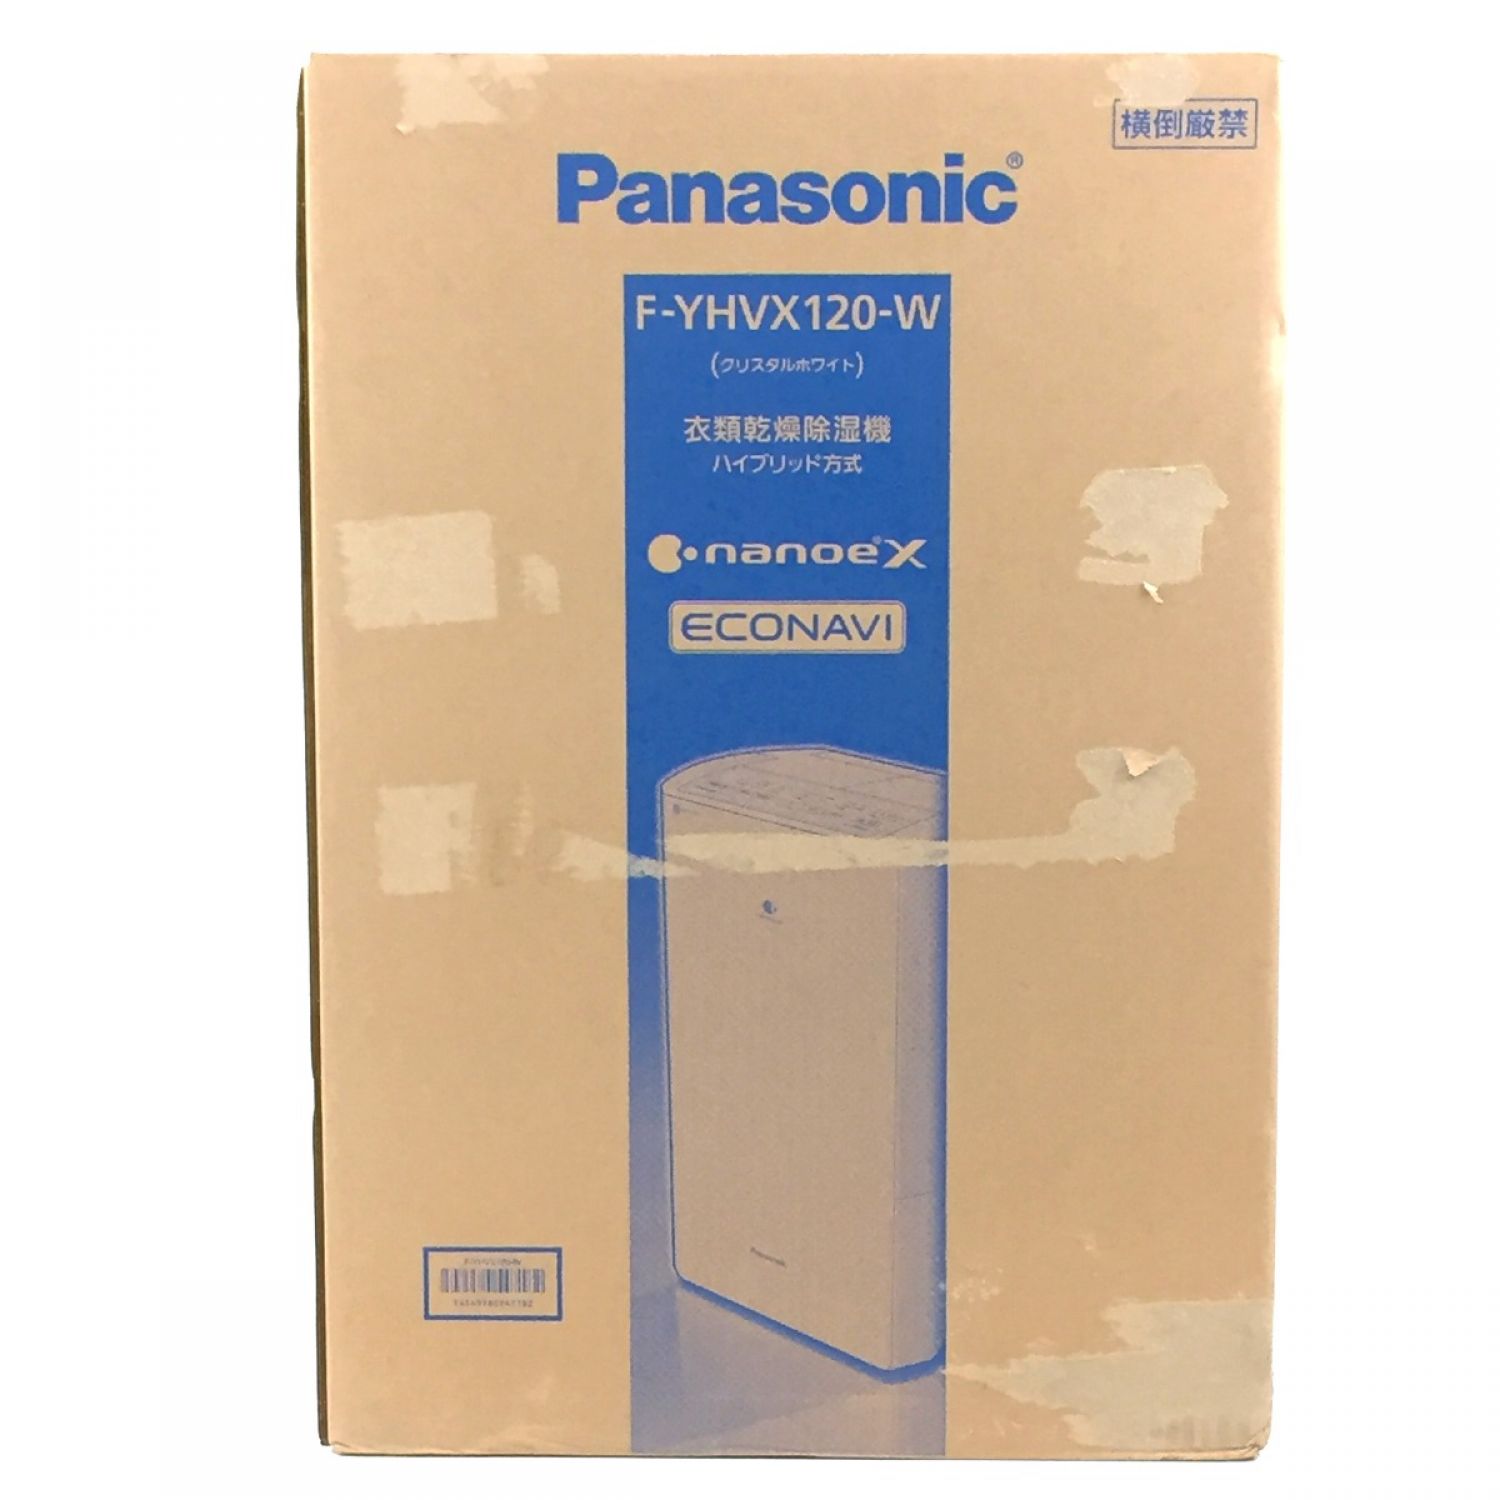 中古】 Panasonic パナソニック 衣類乾燥除湿機 HYBRID&ECONAVI&nanoeX